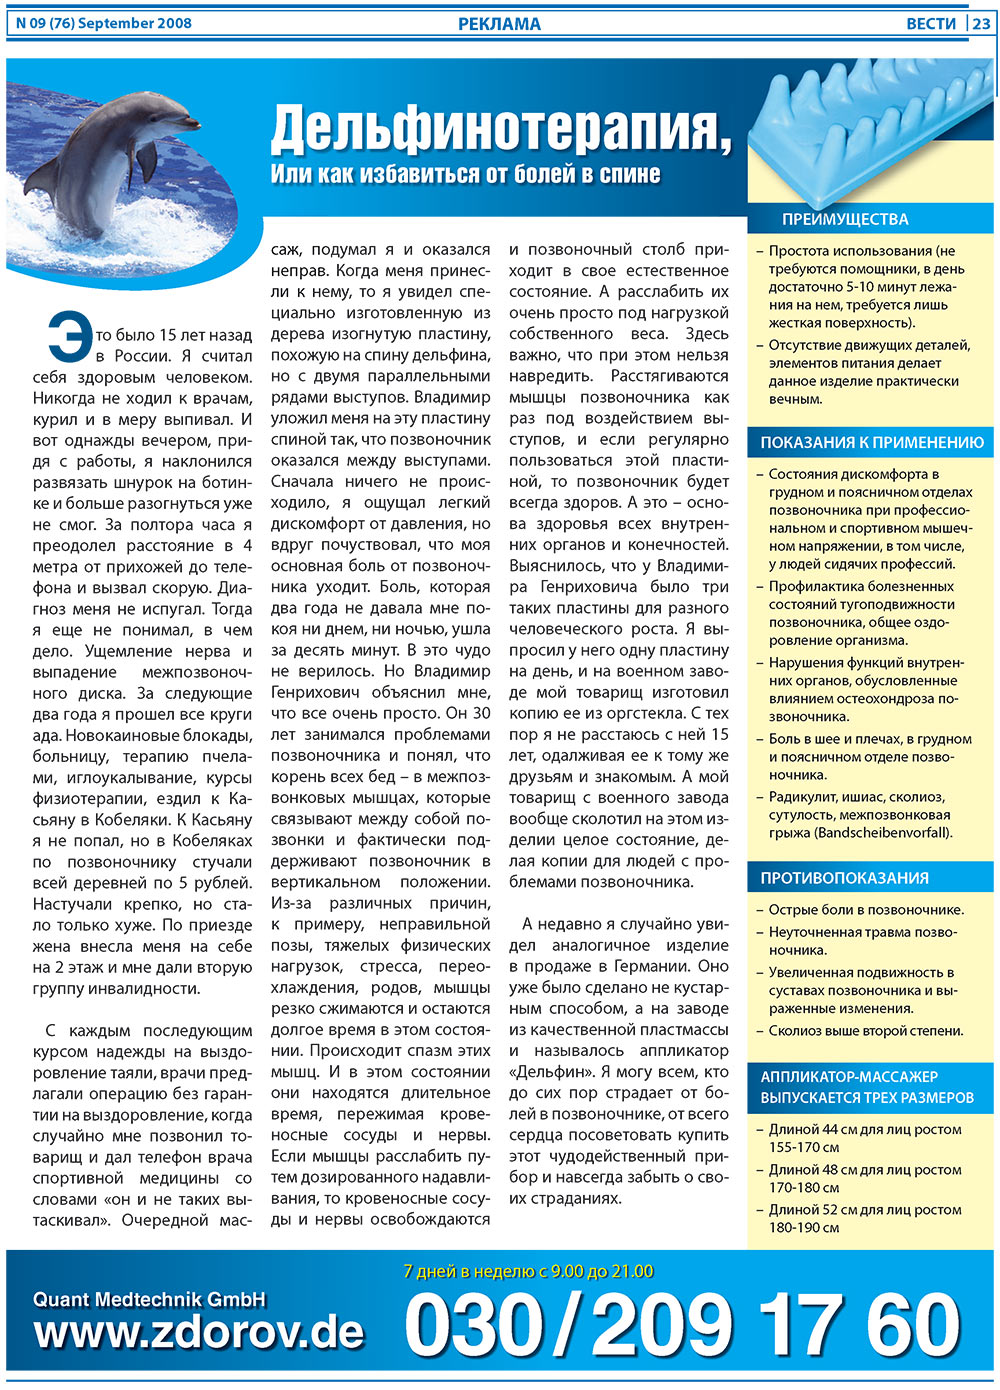 Вести, газета. 2008 №9 стр.23